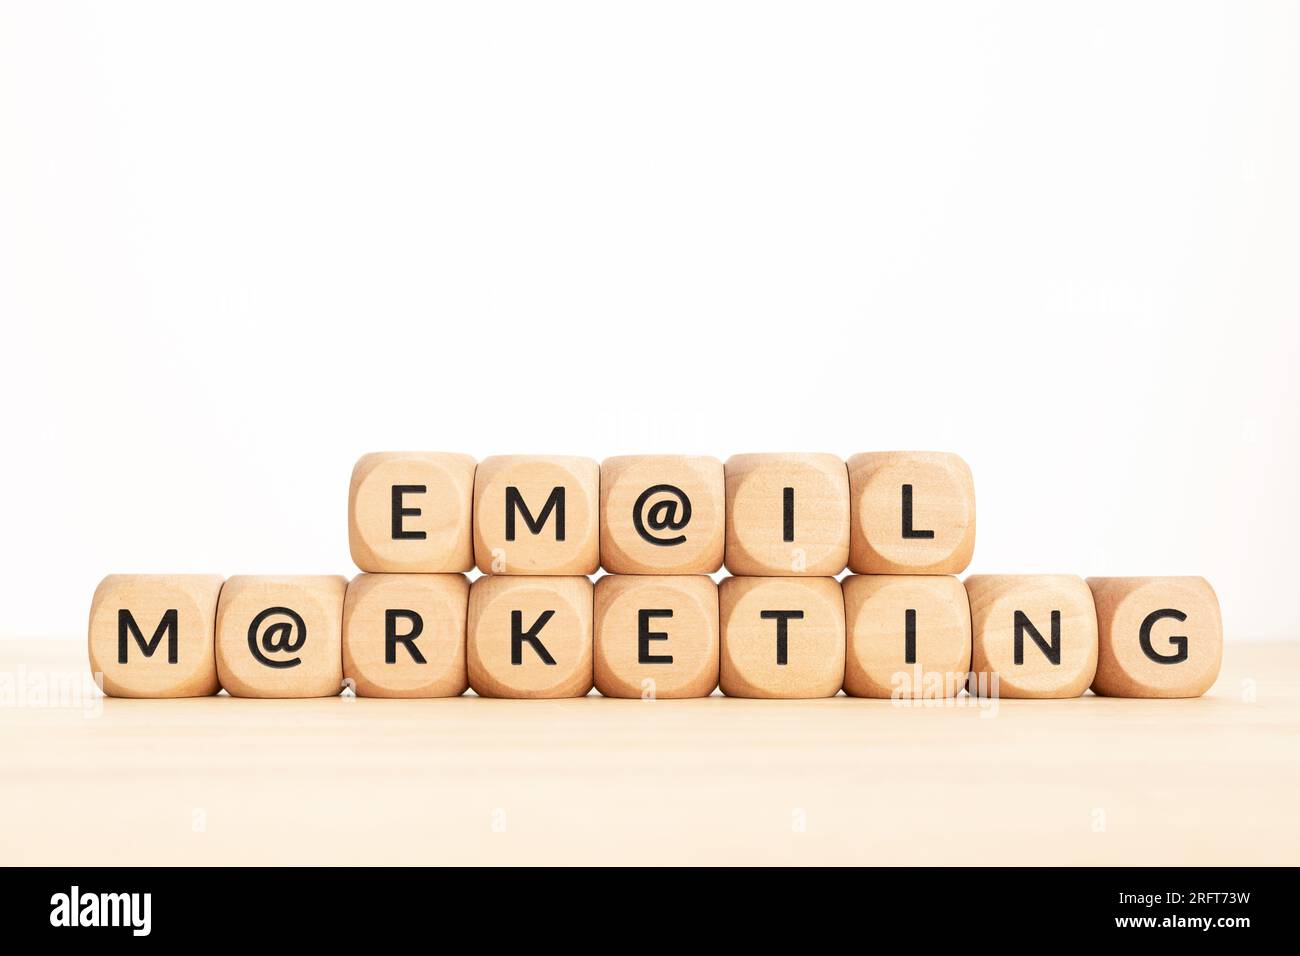 Email Marketing phrase sur des blocs en bois. Espace de copie Banque D'Images